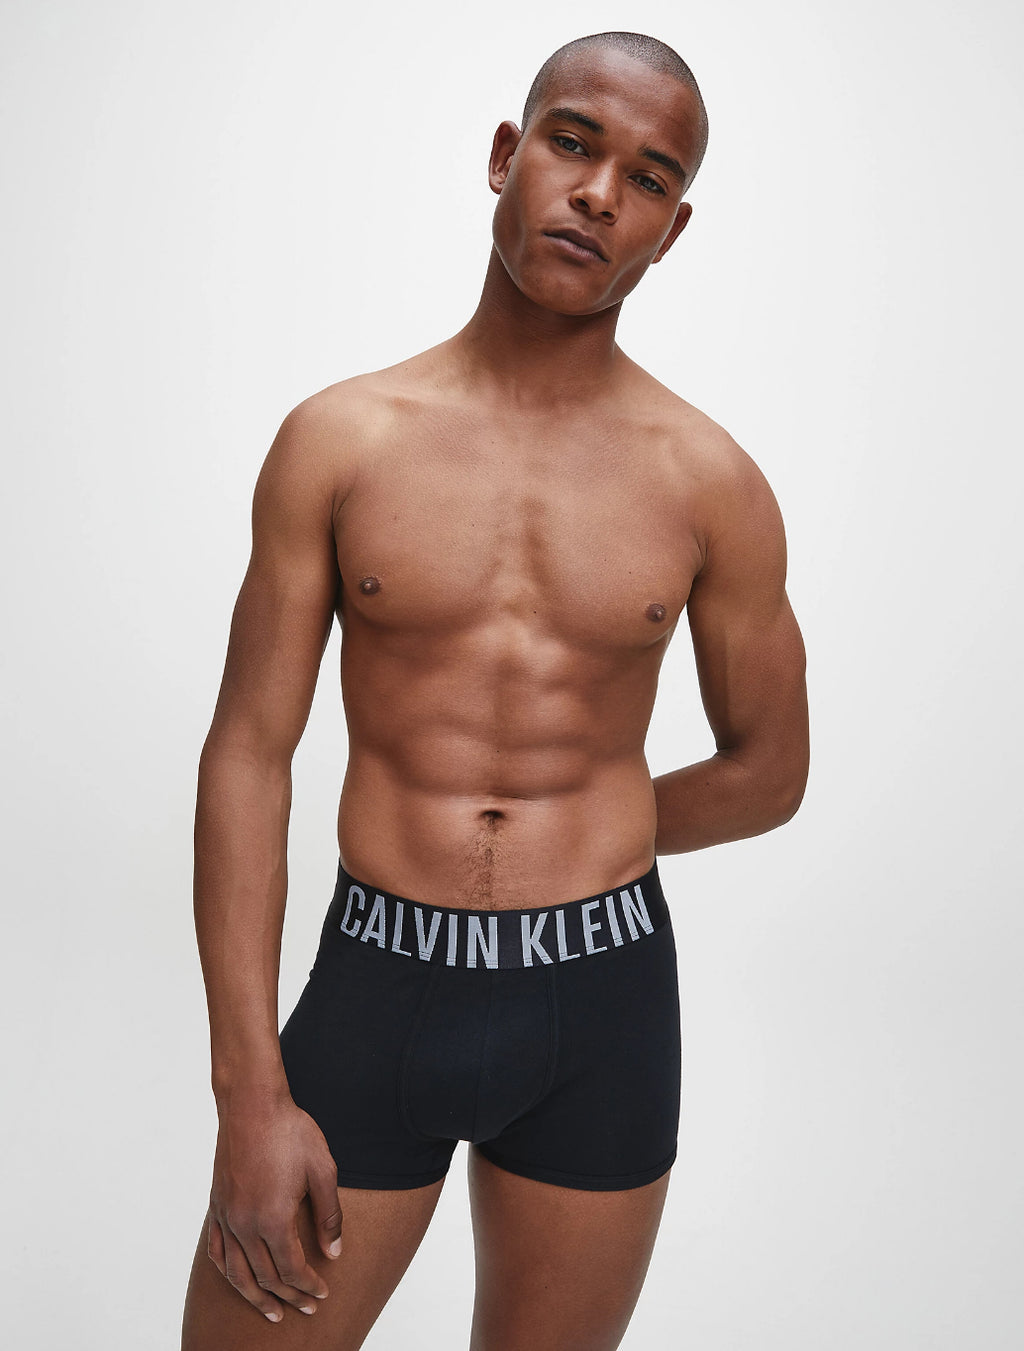 Calvin Klein Boxers, Black, 2 Pack, Men's Underwear